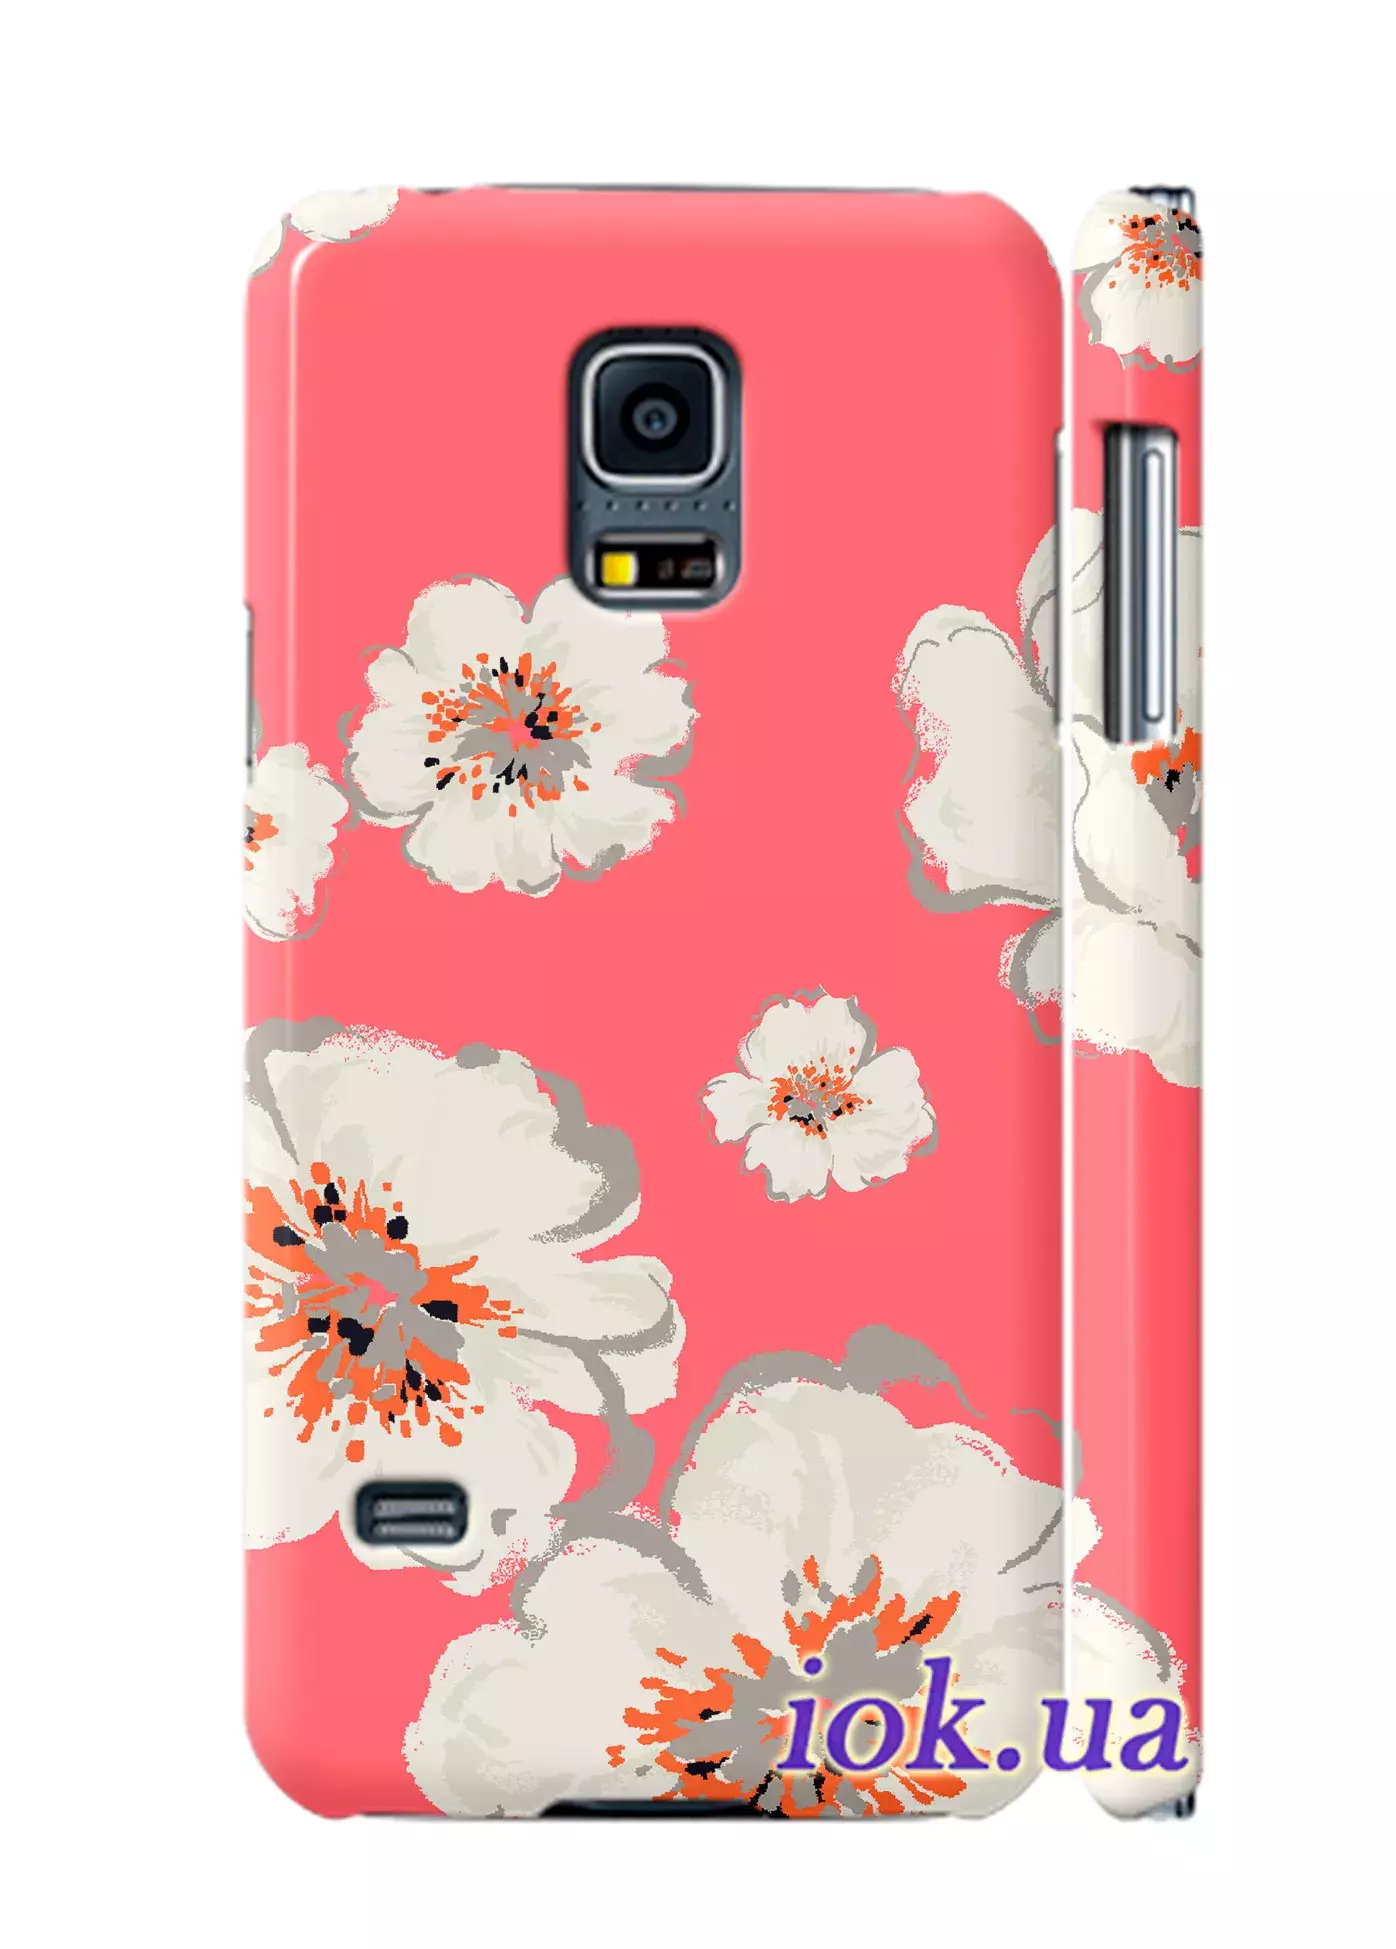 Чехол для Galaxy S5 Mini - Чудные цветы